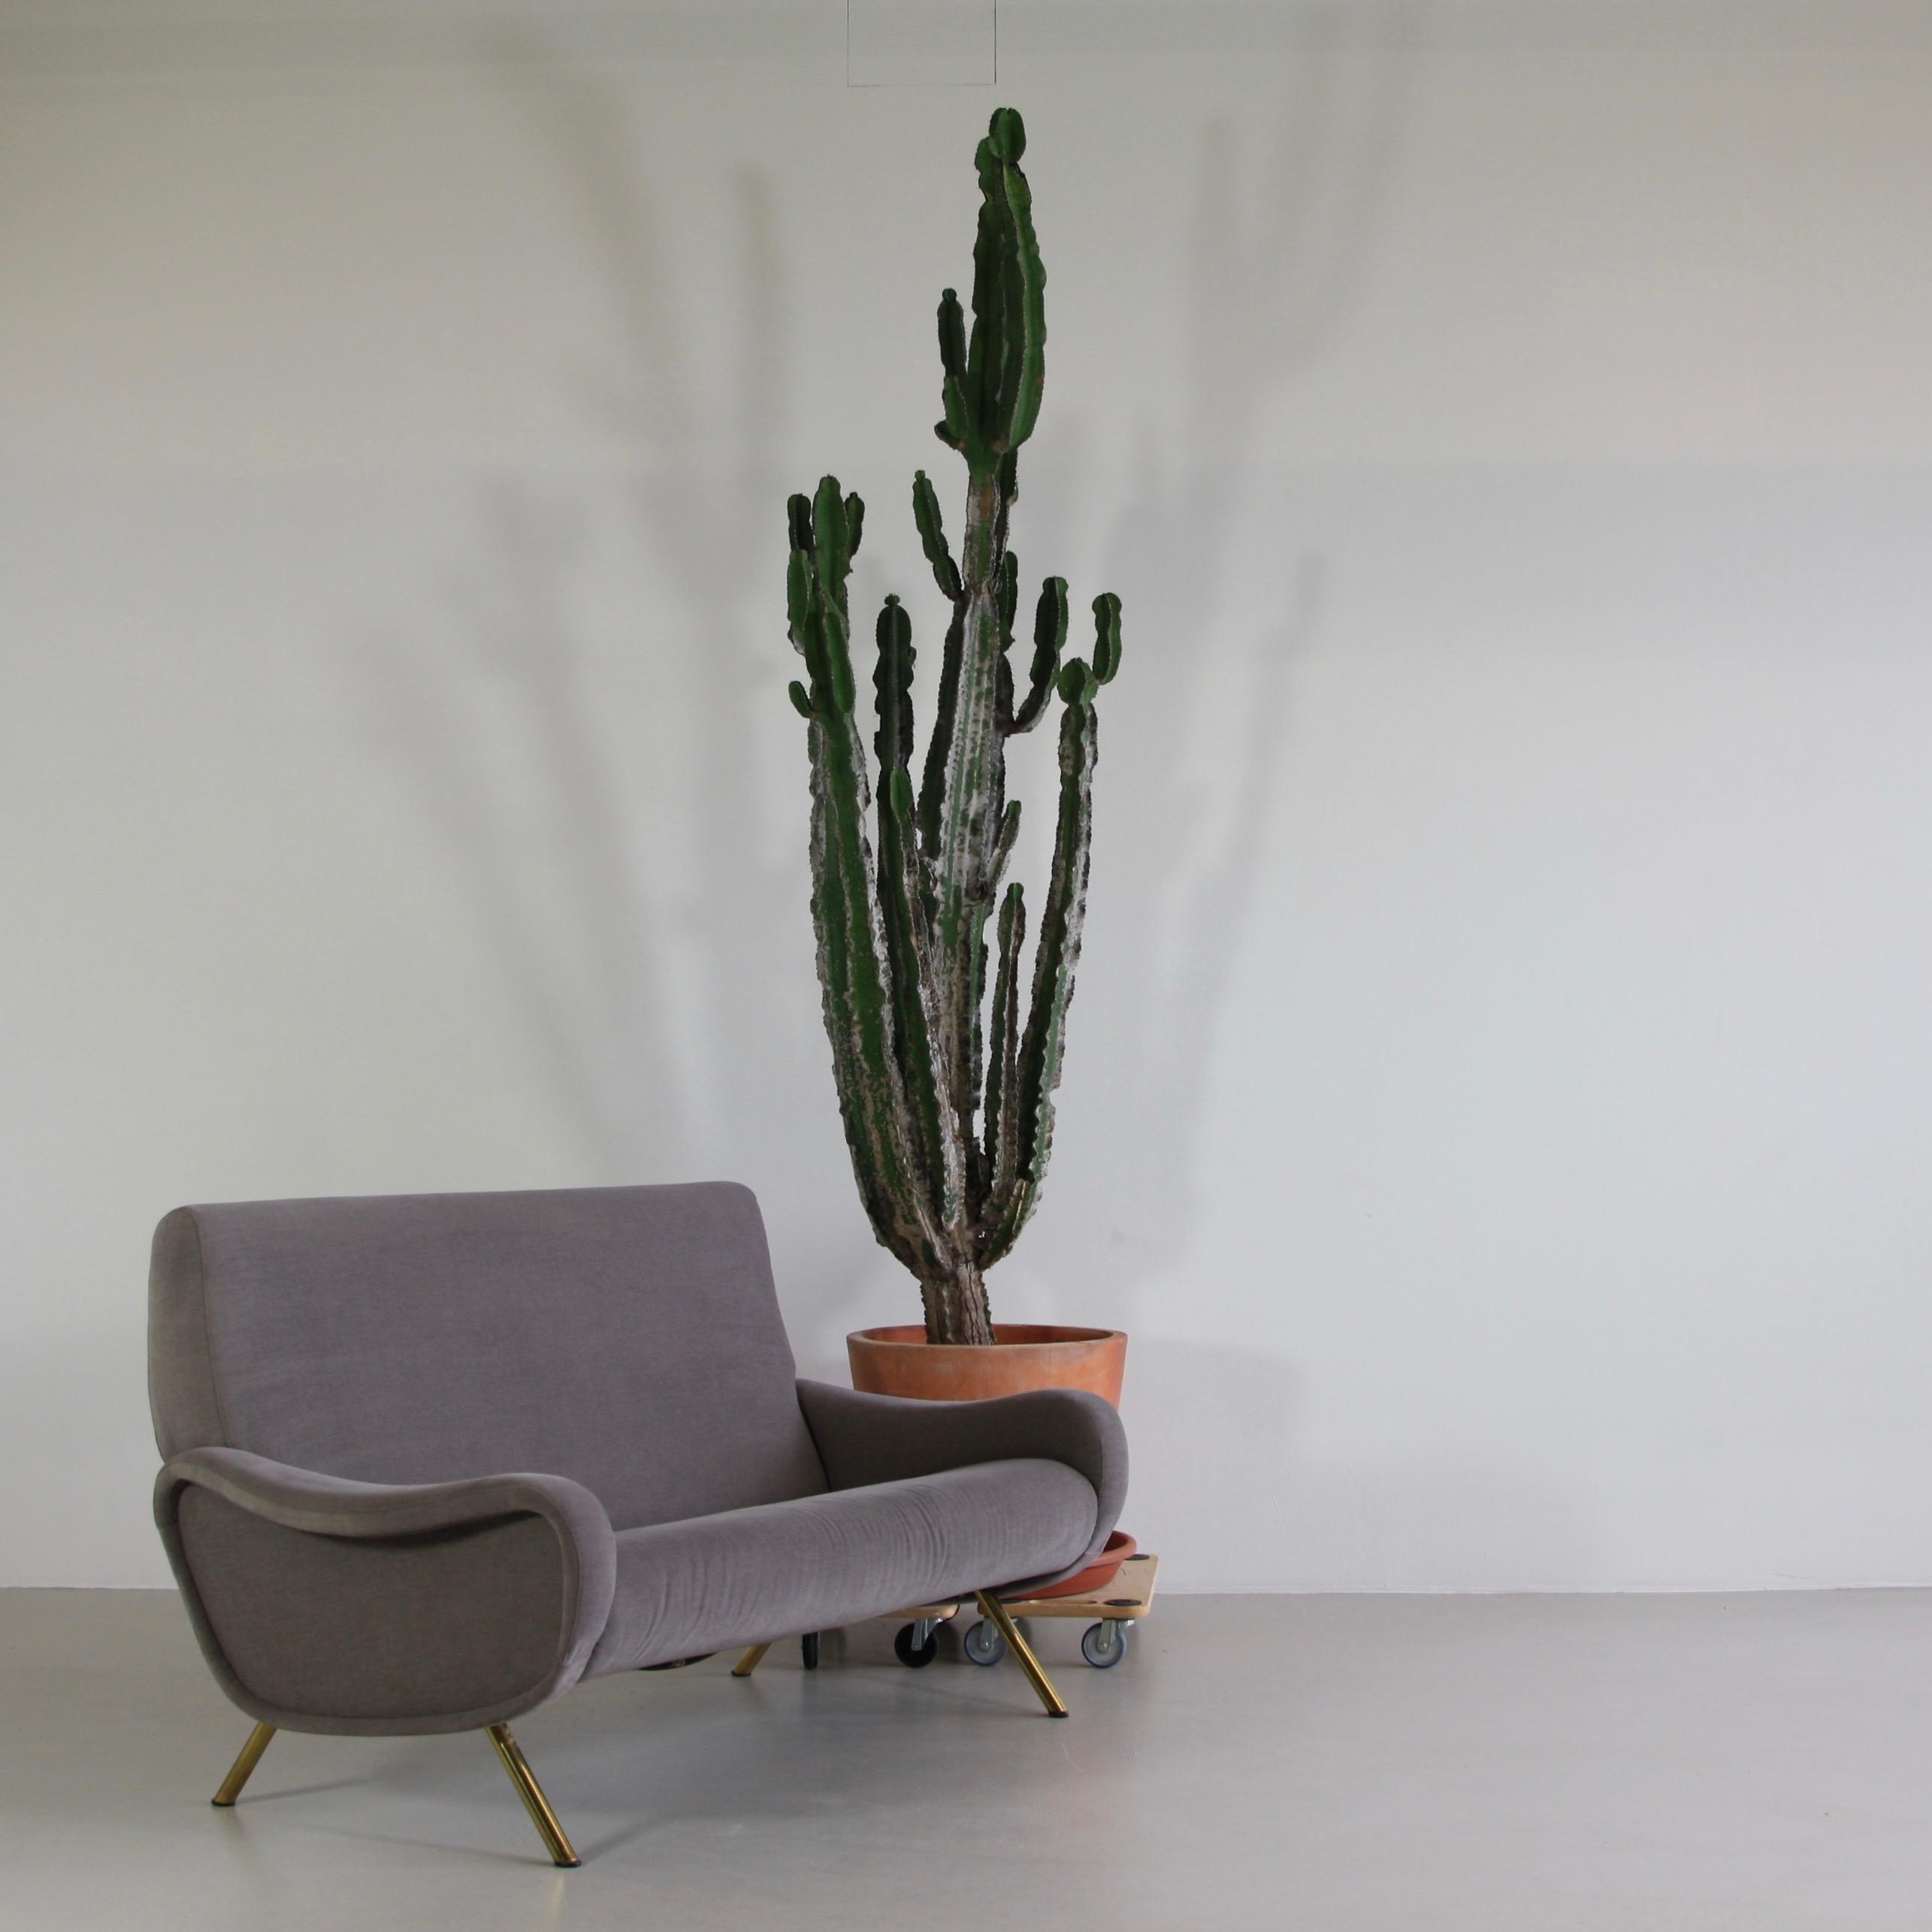 Two-Seat Sofa by Marco Zanuso for Arflex 1